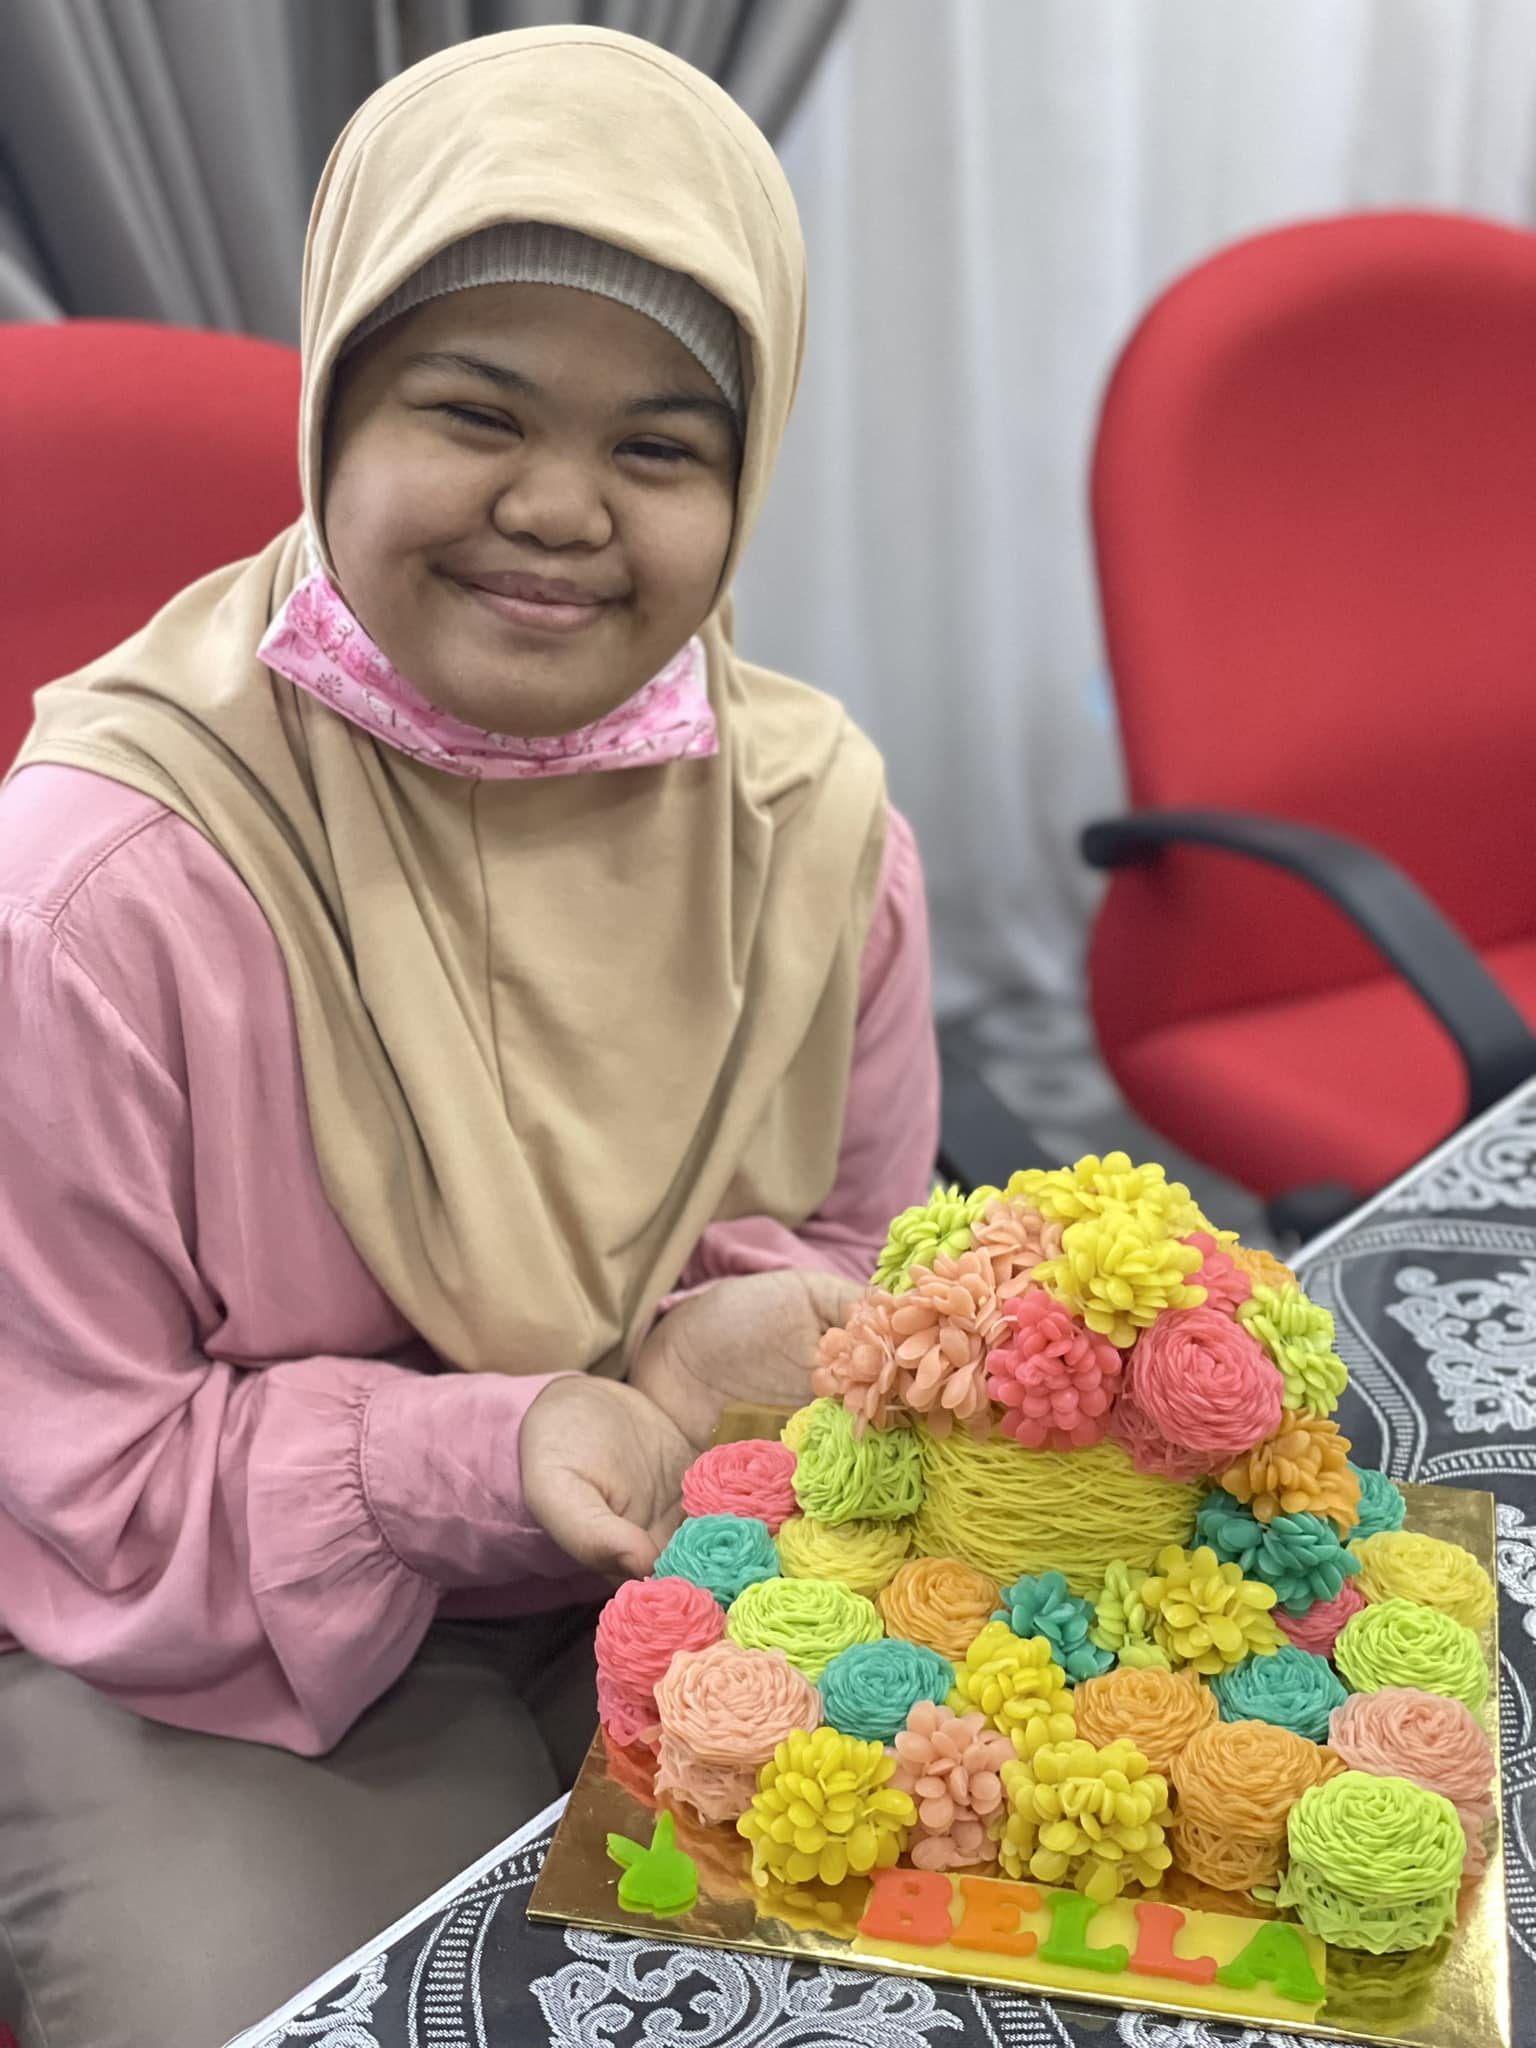 "OKT Cuai, Gagal Jaga Bella Dengan Baik.." - Siti Bainun Menangis Di Mahkamah? 3